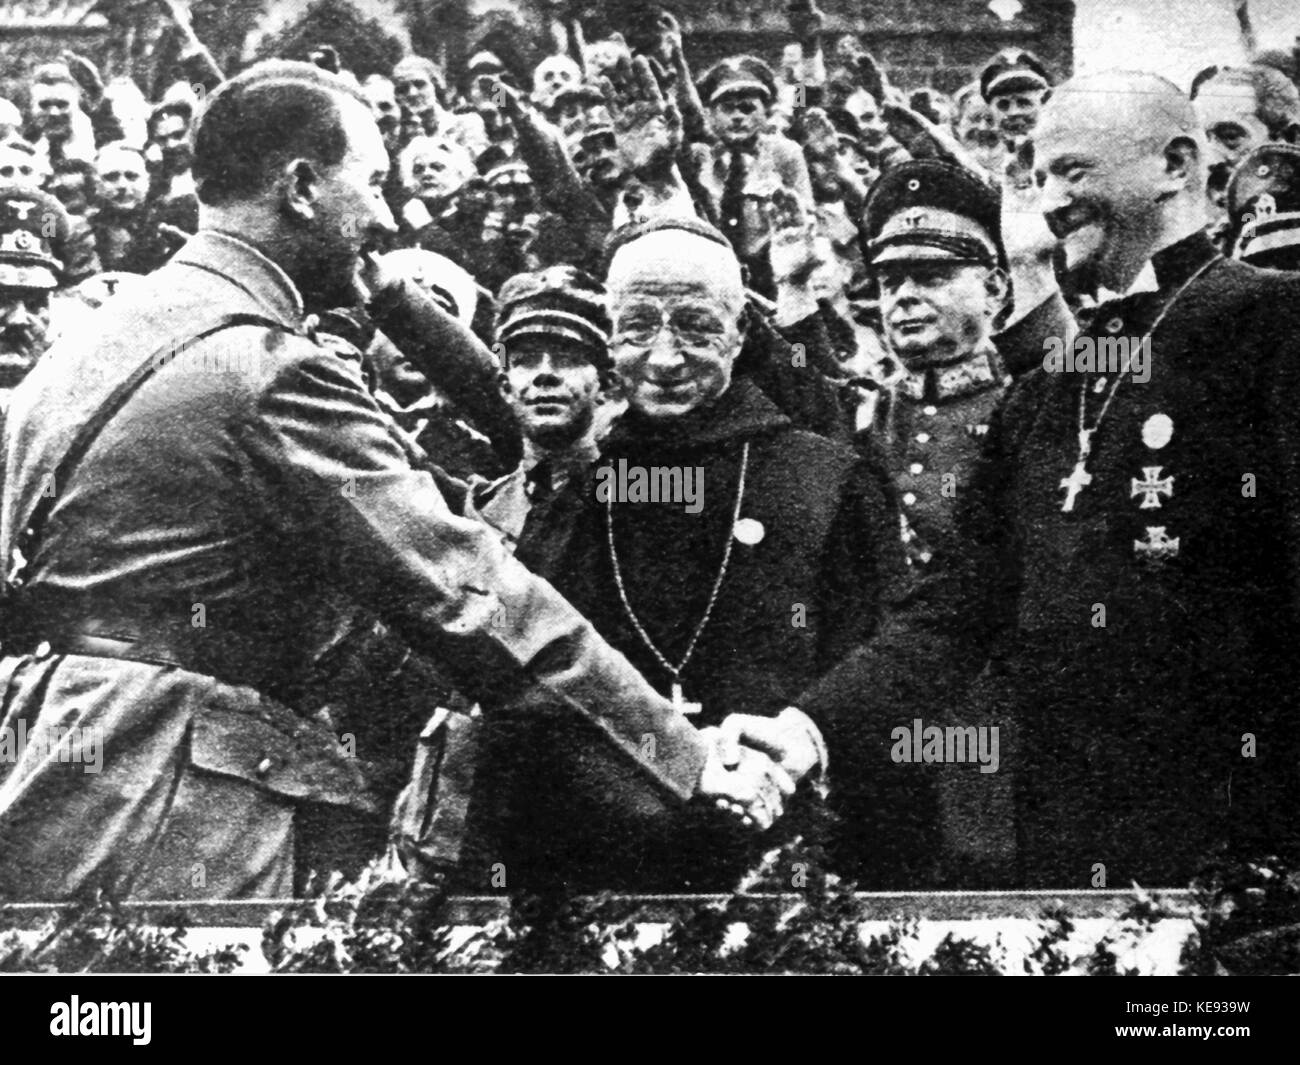 Adolf Hitler (l) Nuremberg accueille Mgr Ludwig Müller (r) au cours de la nuremberg du nsdap en 1934. Dans le monde d'utilisation | Banque D'Images